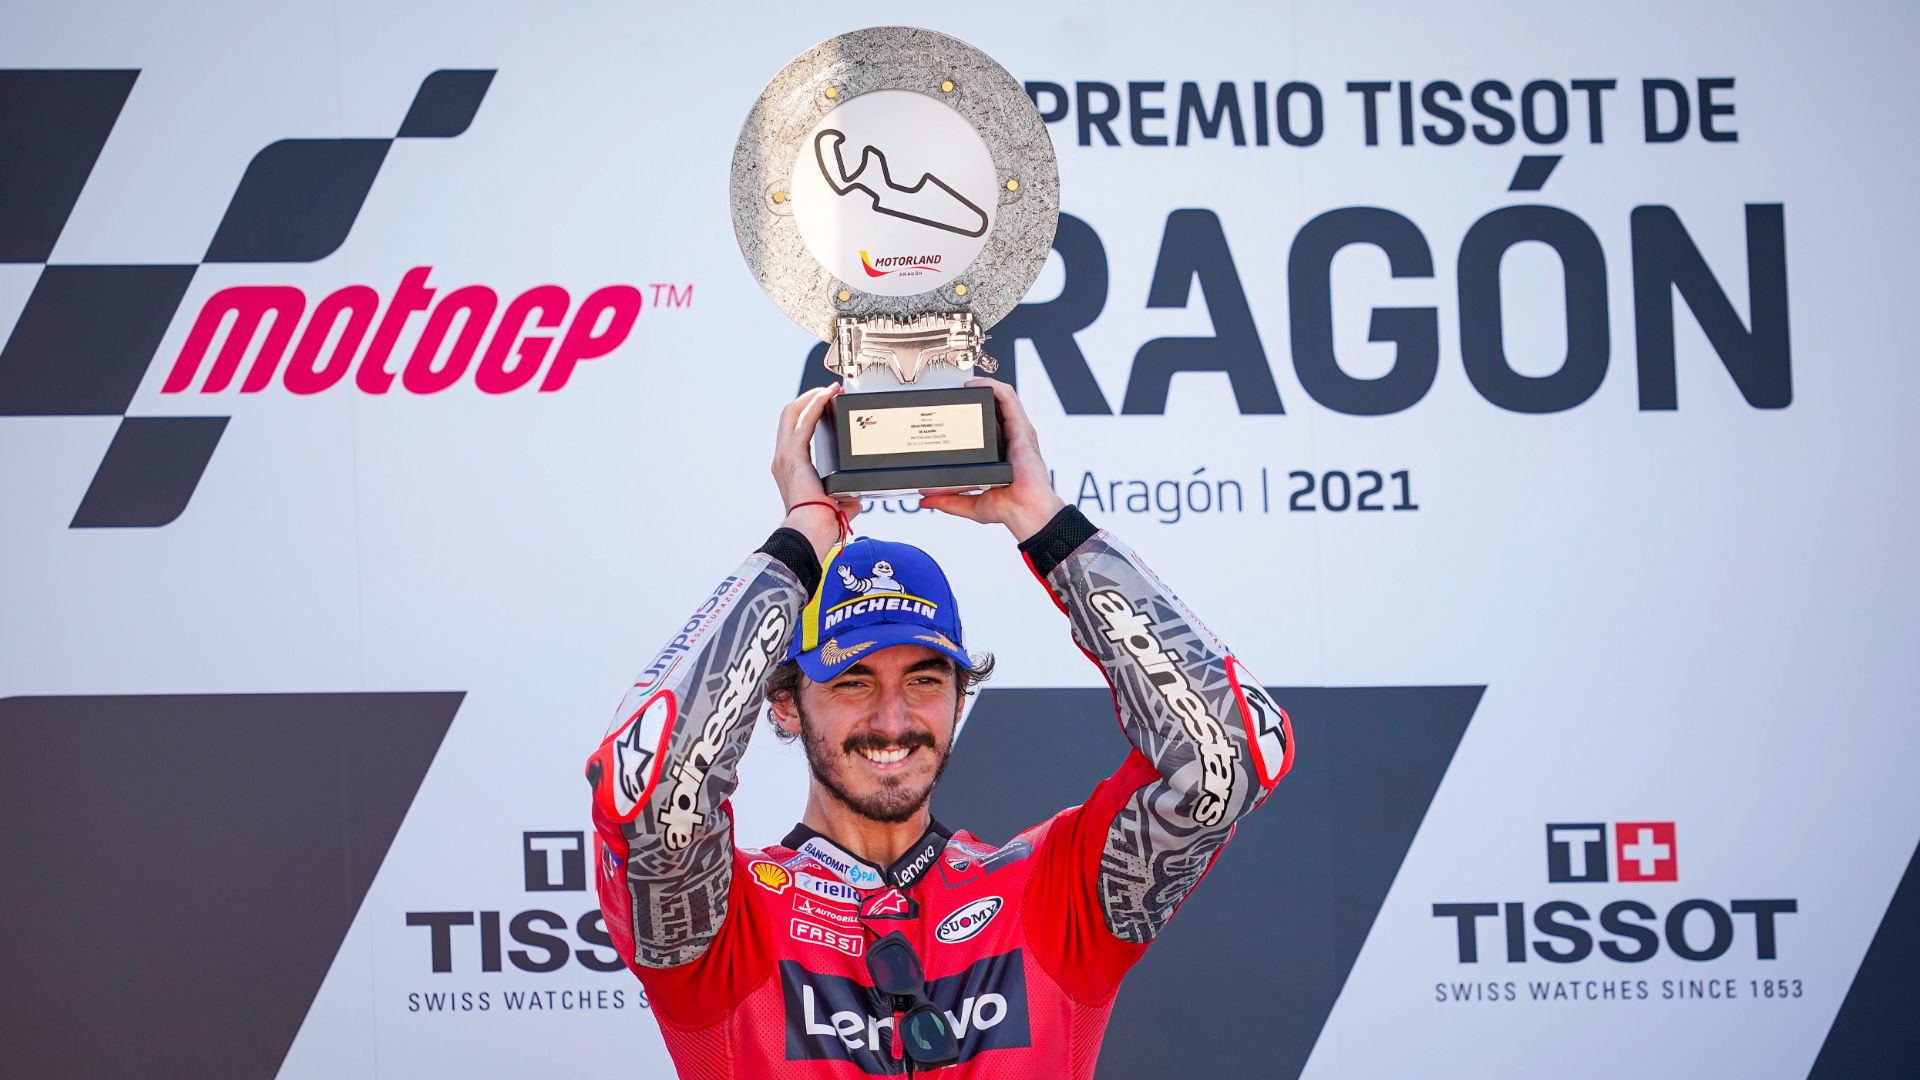 Aragón GP. Pecco Bagnaia secures extraordinary maiden victory in MotoGP. (Photo gallery)